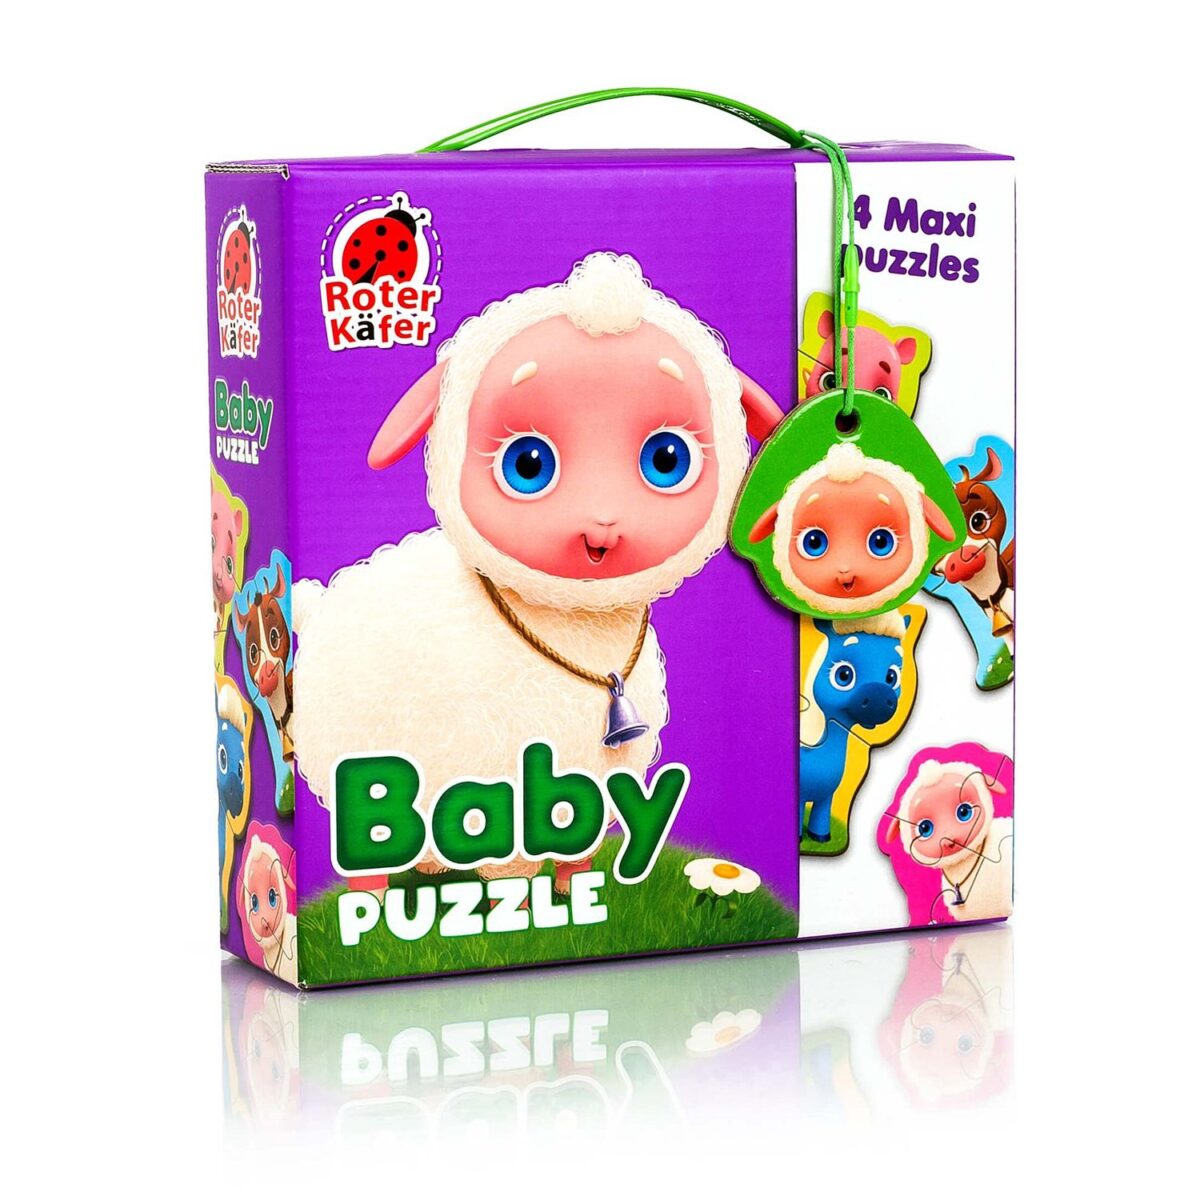 Baby puzzle MAXI “Ферма” / “Farm” (13 элементов) в коробке